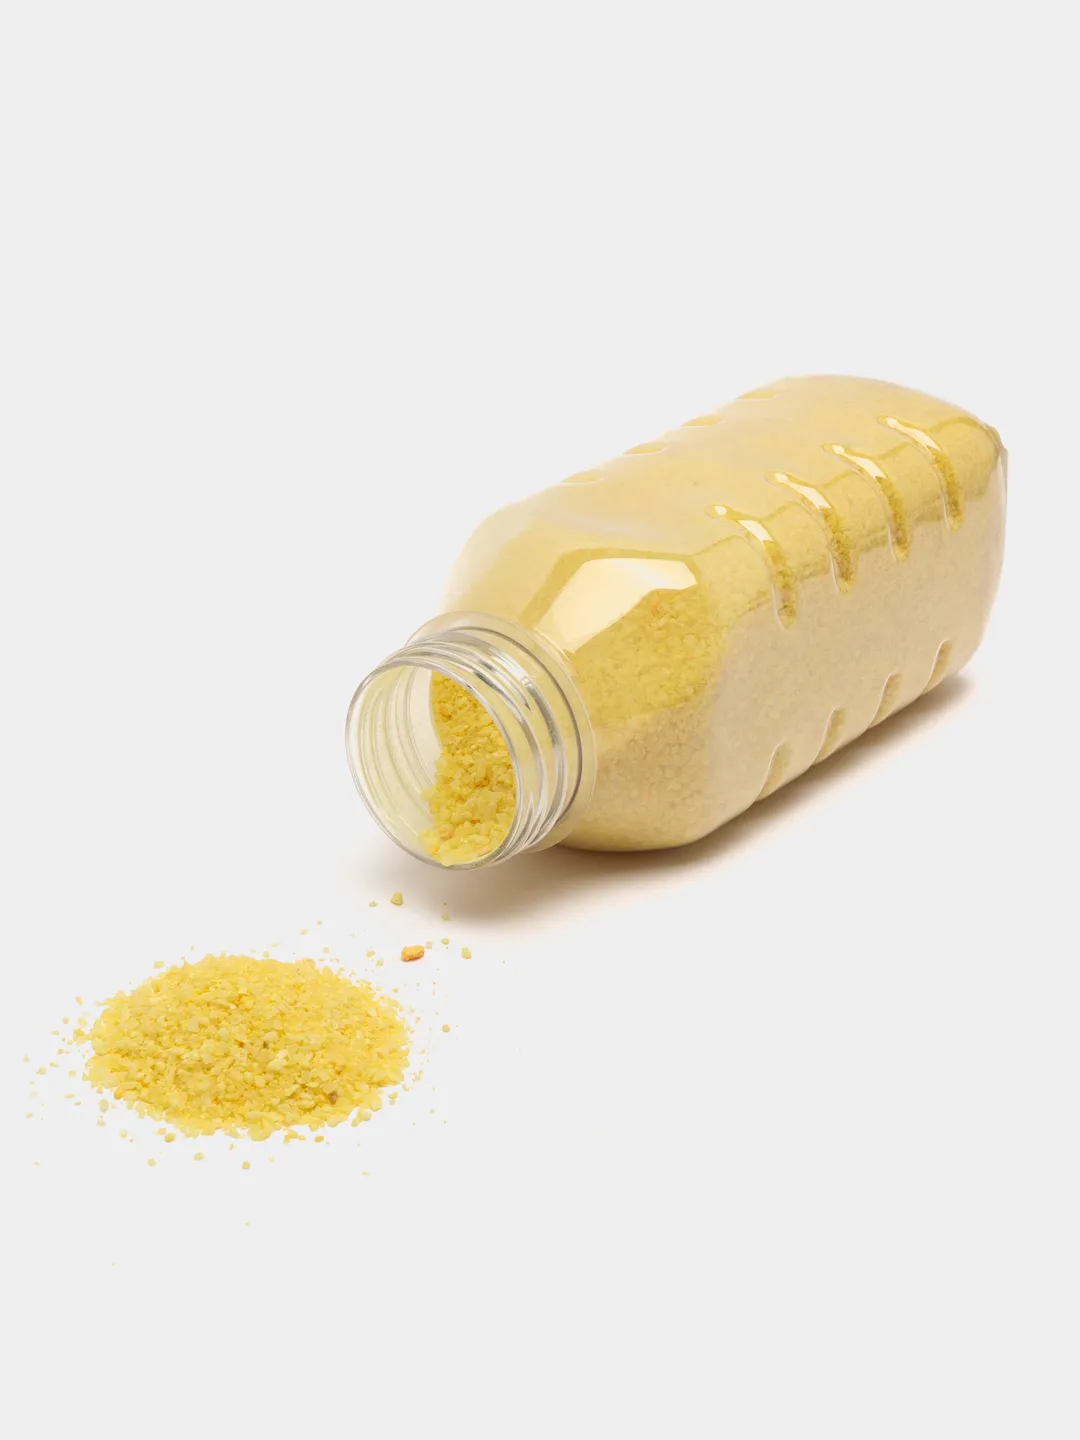 Желтая бутылочка. Желтые соли серебра. Соли серебра желтого цвета. Соль для ванны цветная желтая. Светло желтая соль серебра.